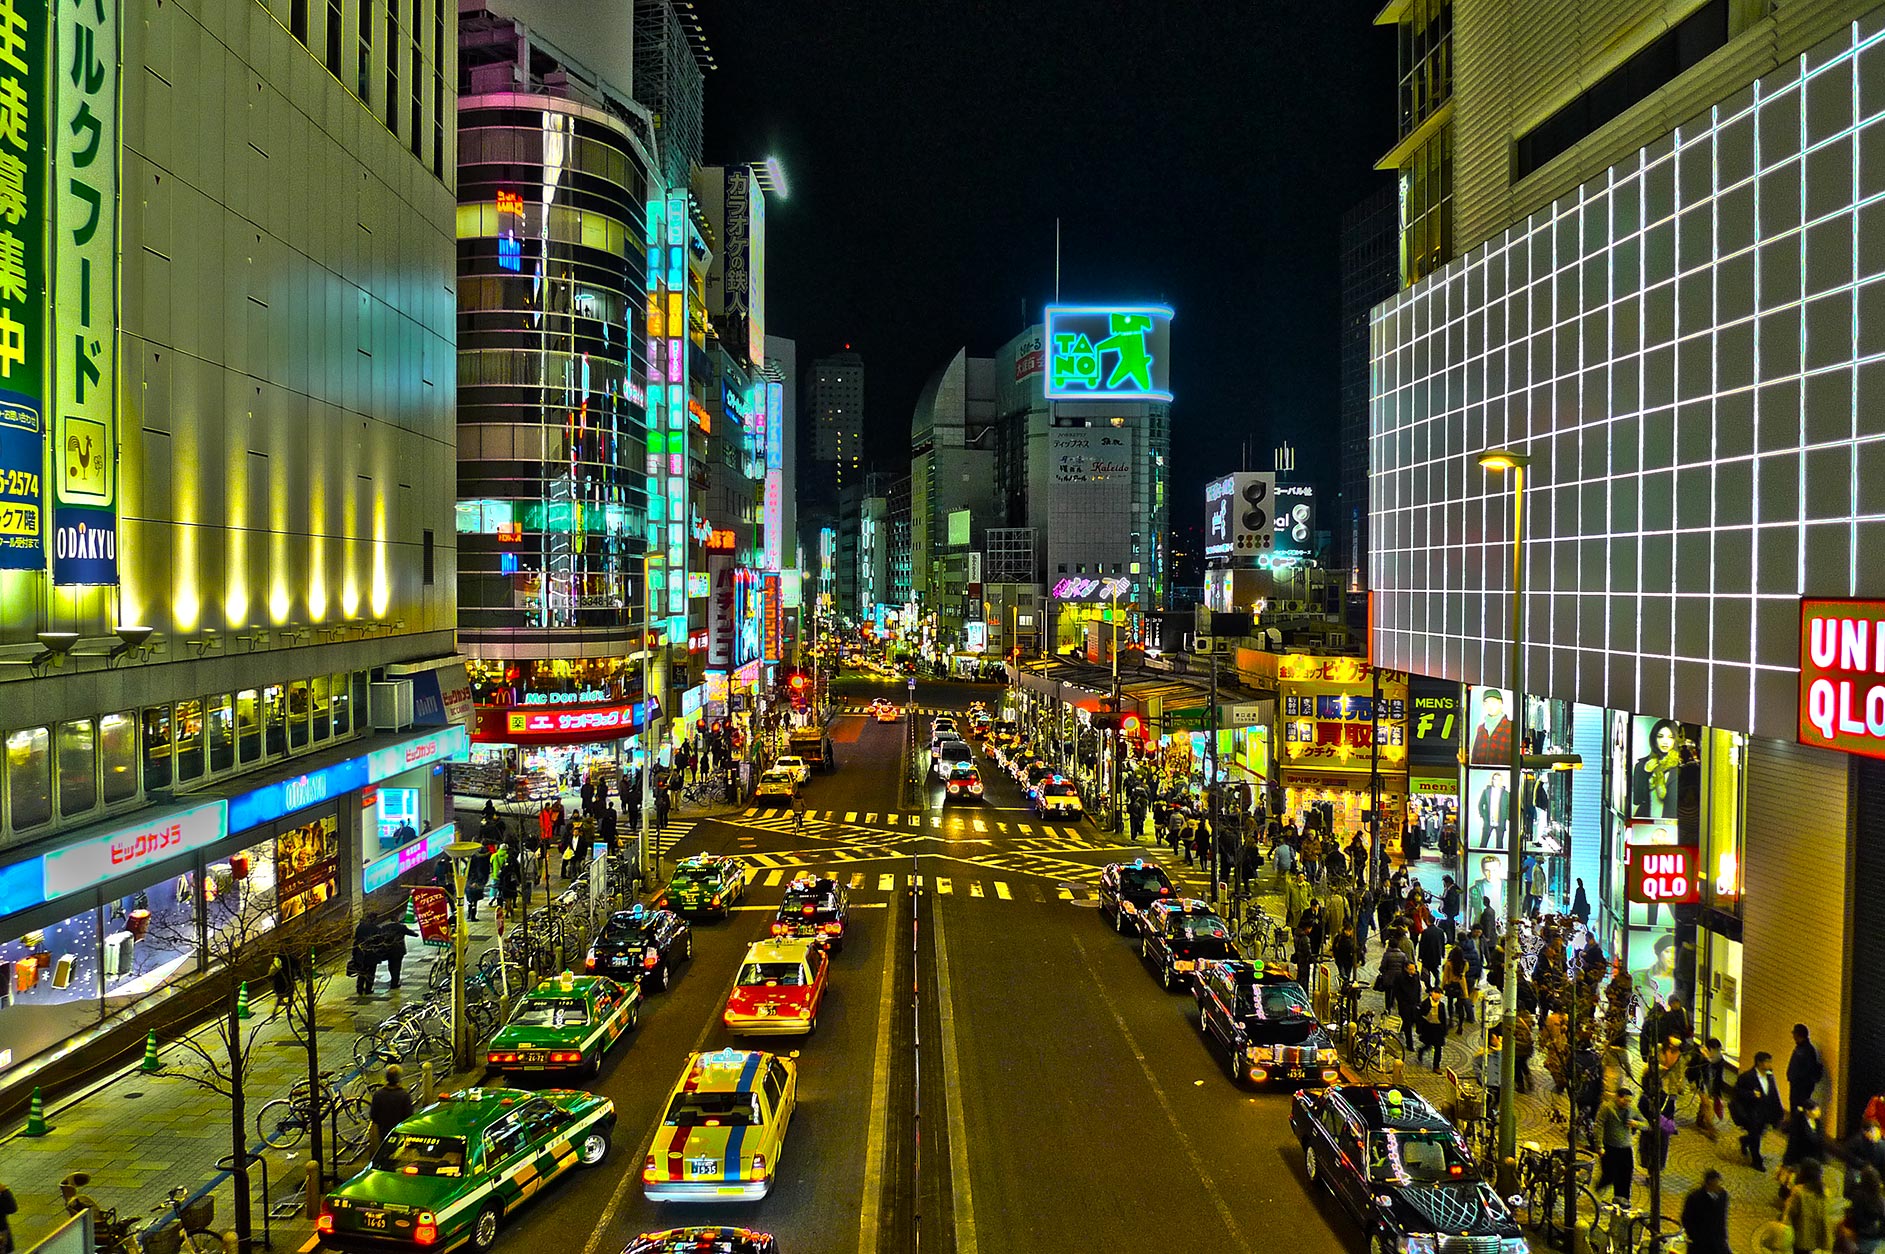 Shinjuku, Tokyo at night (HDR Photo)